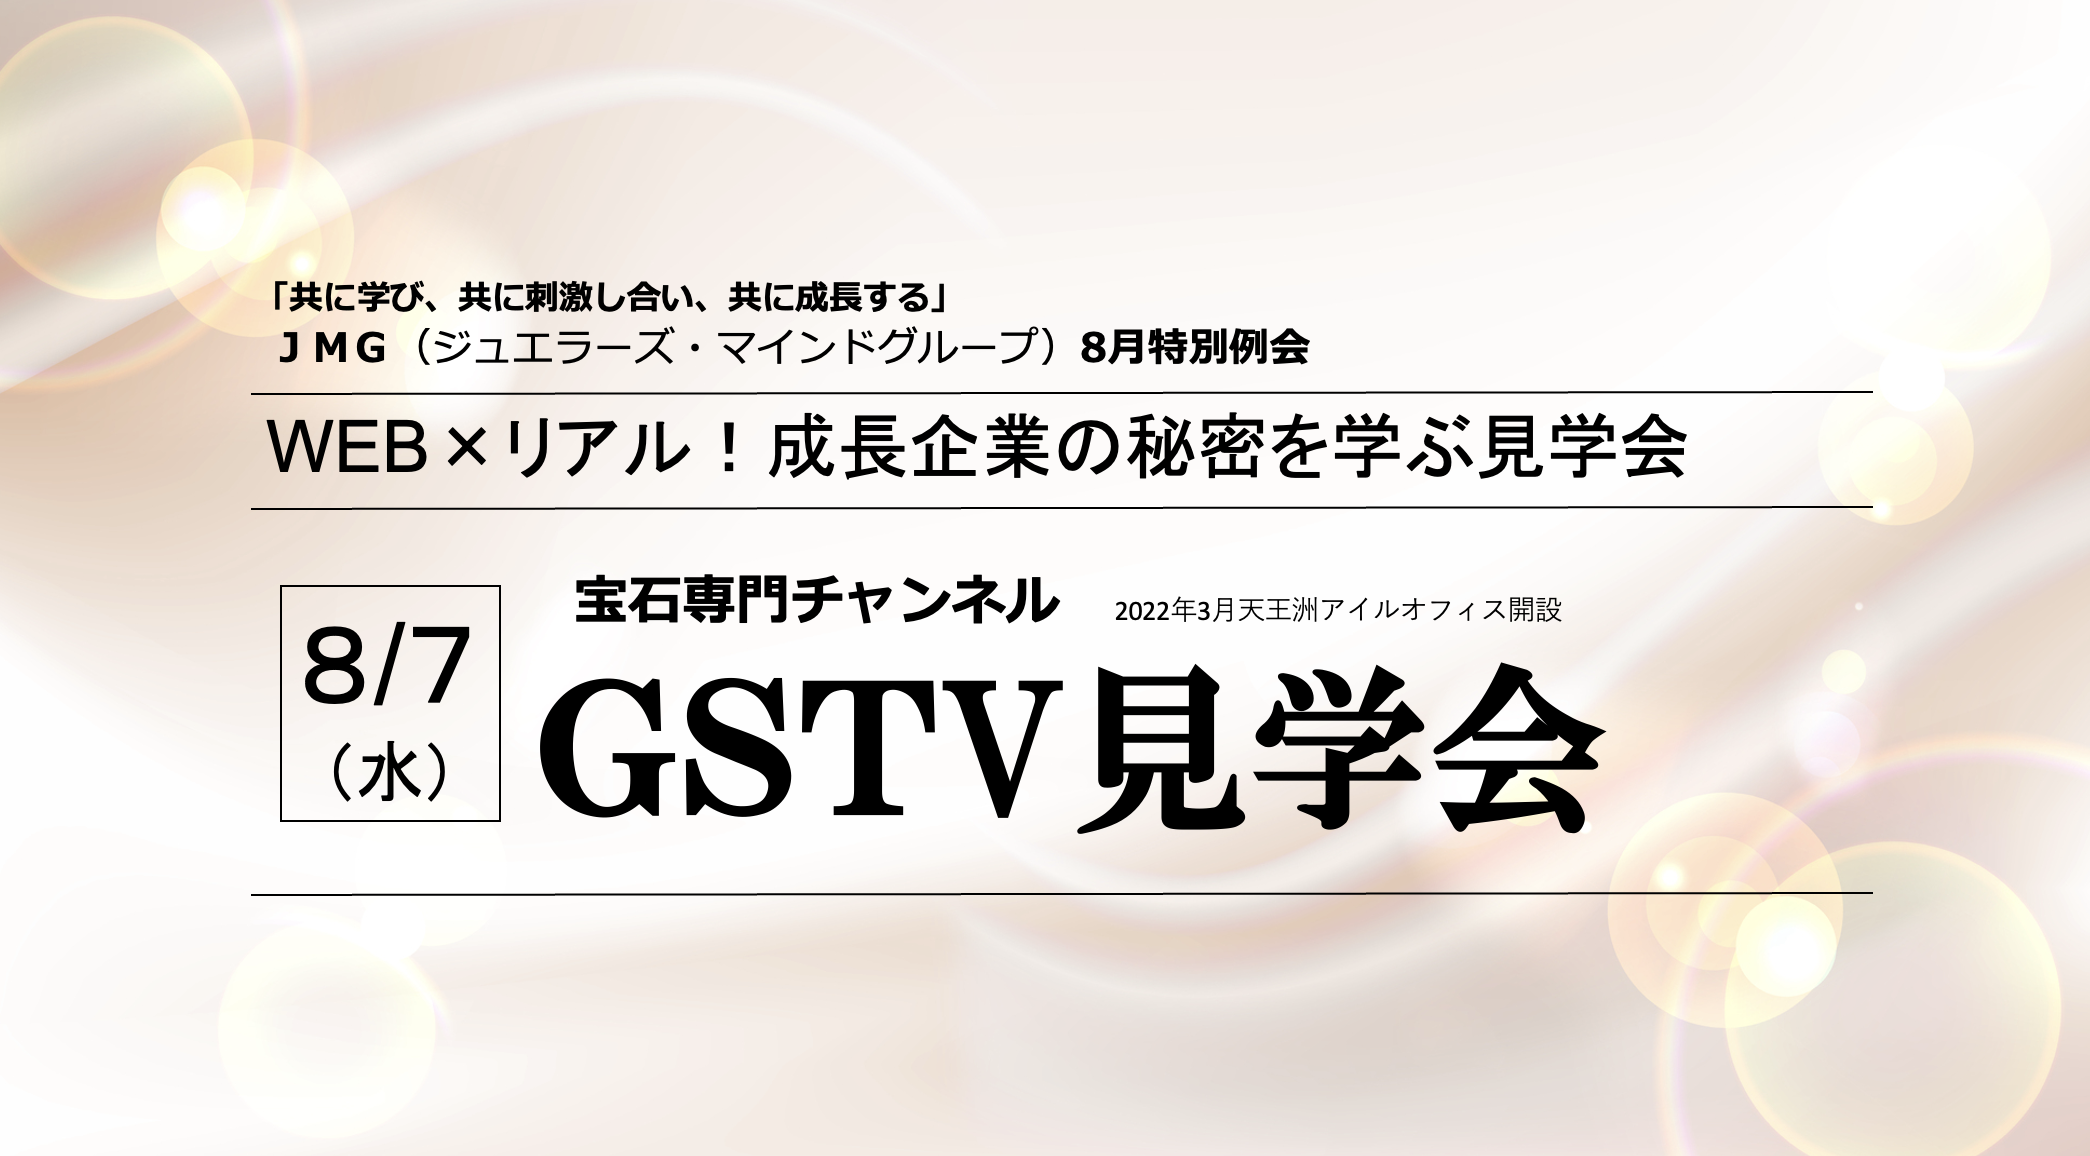 GSTV見学会＠PR現代